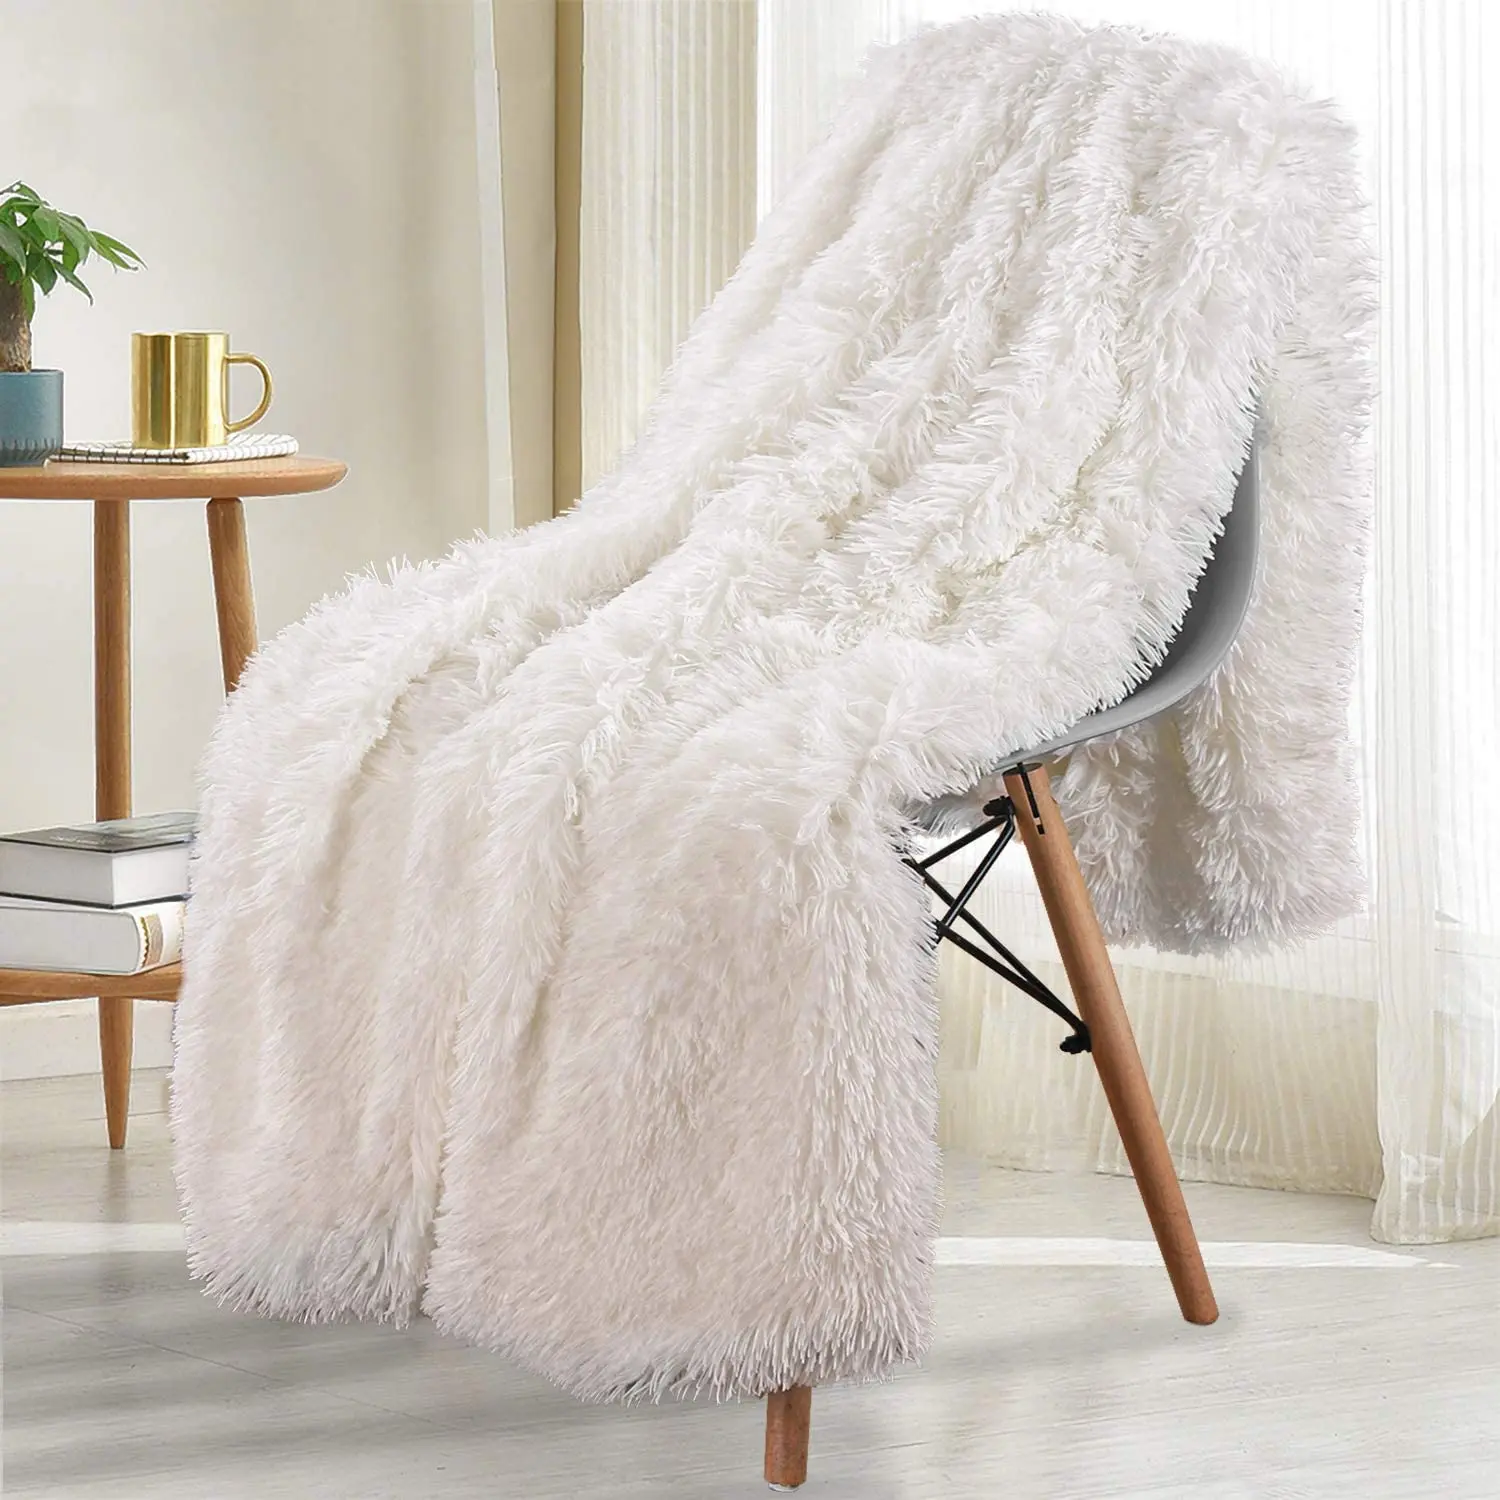 

Двухслойное плюшевое теплое зимнее одеяло, домашнее покрывало на кровать, клетчатое полотенце на стул, покрывало на диван, одеяла и пледы на кровать из ягненка